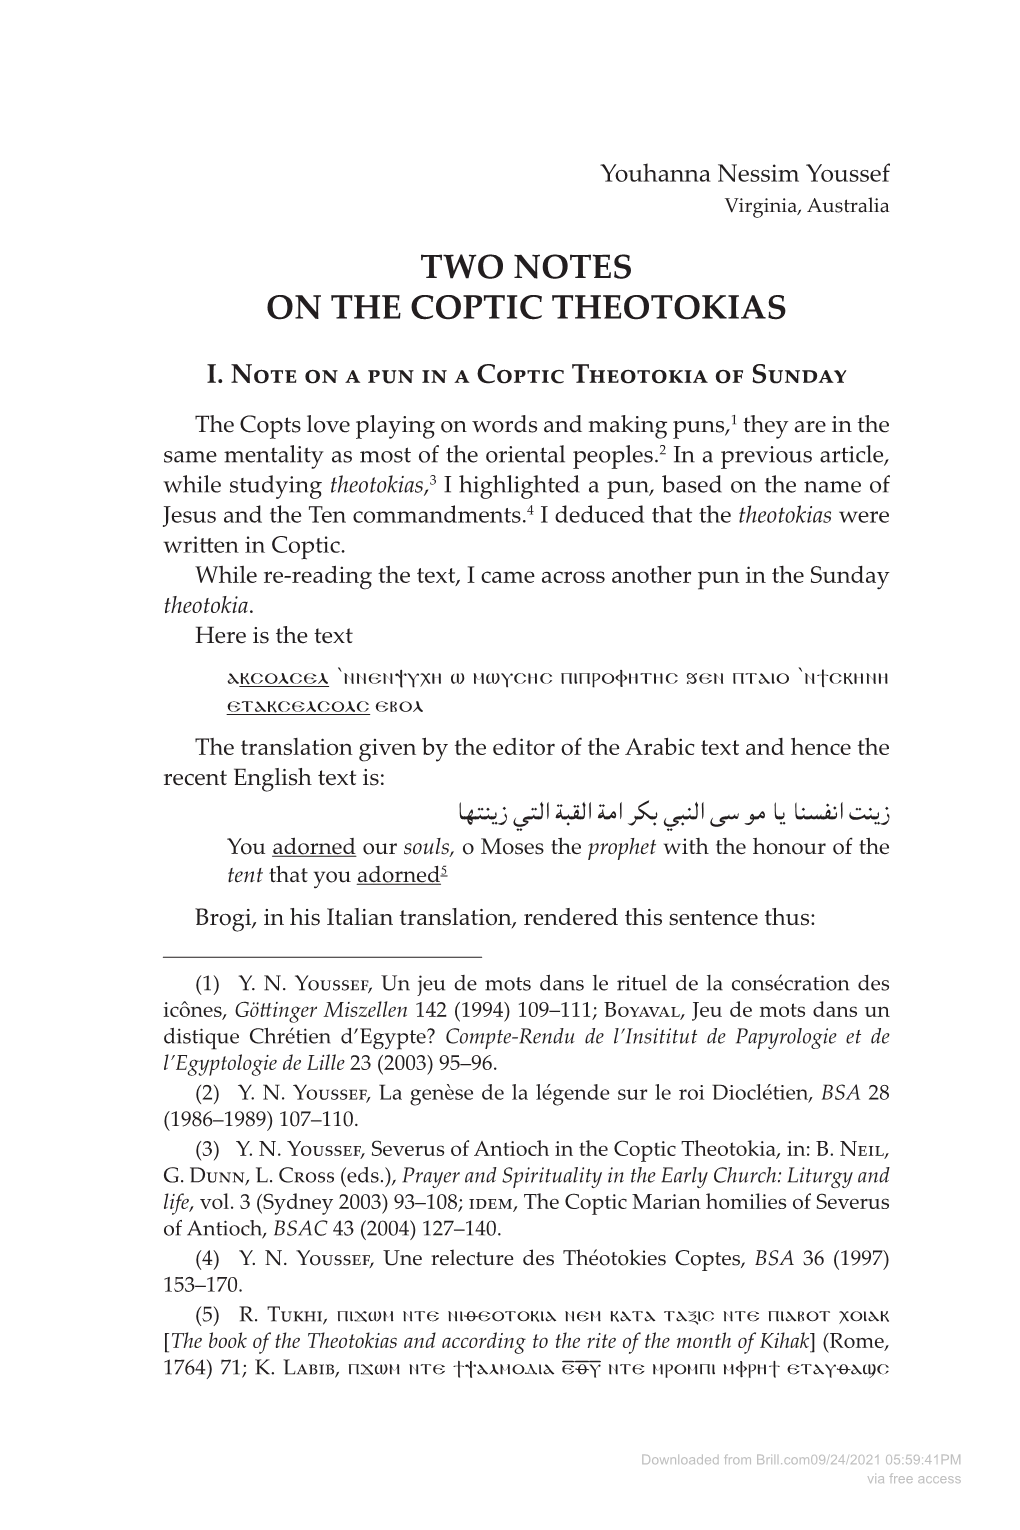 Two Notes on the Coptic Theotokias